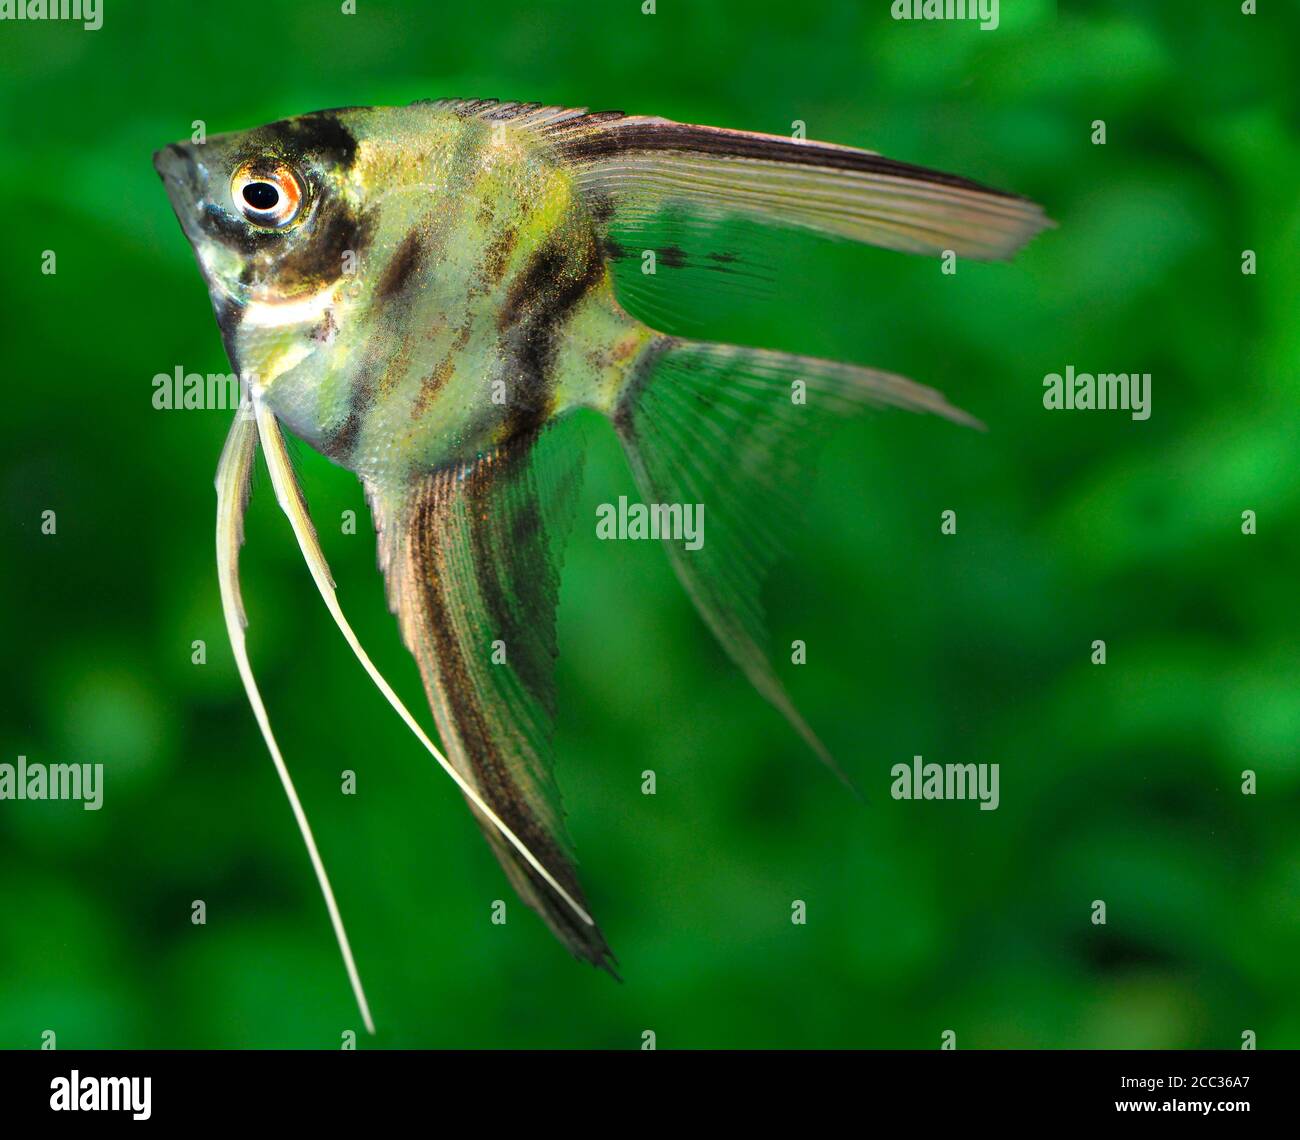 Primo piano di un angelo Imature Fish in un acquario con Un out of Focus Green Plant background Foto Stock